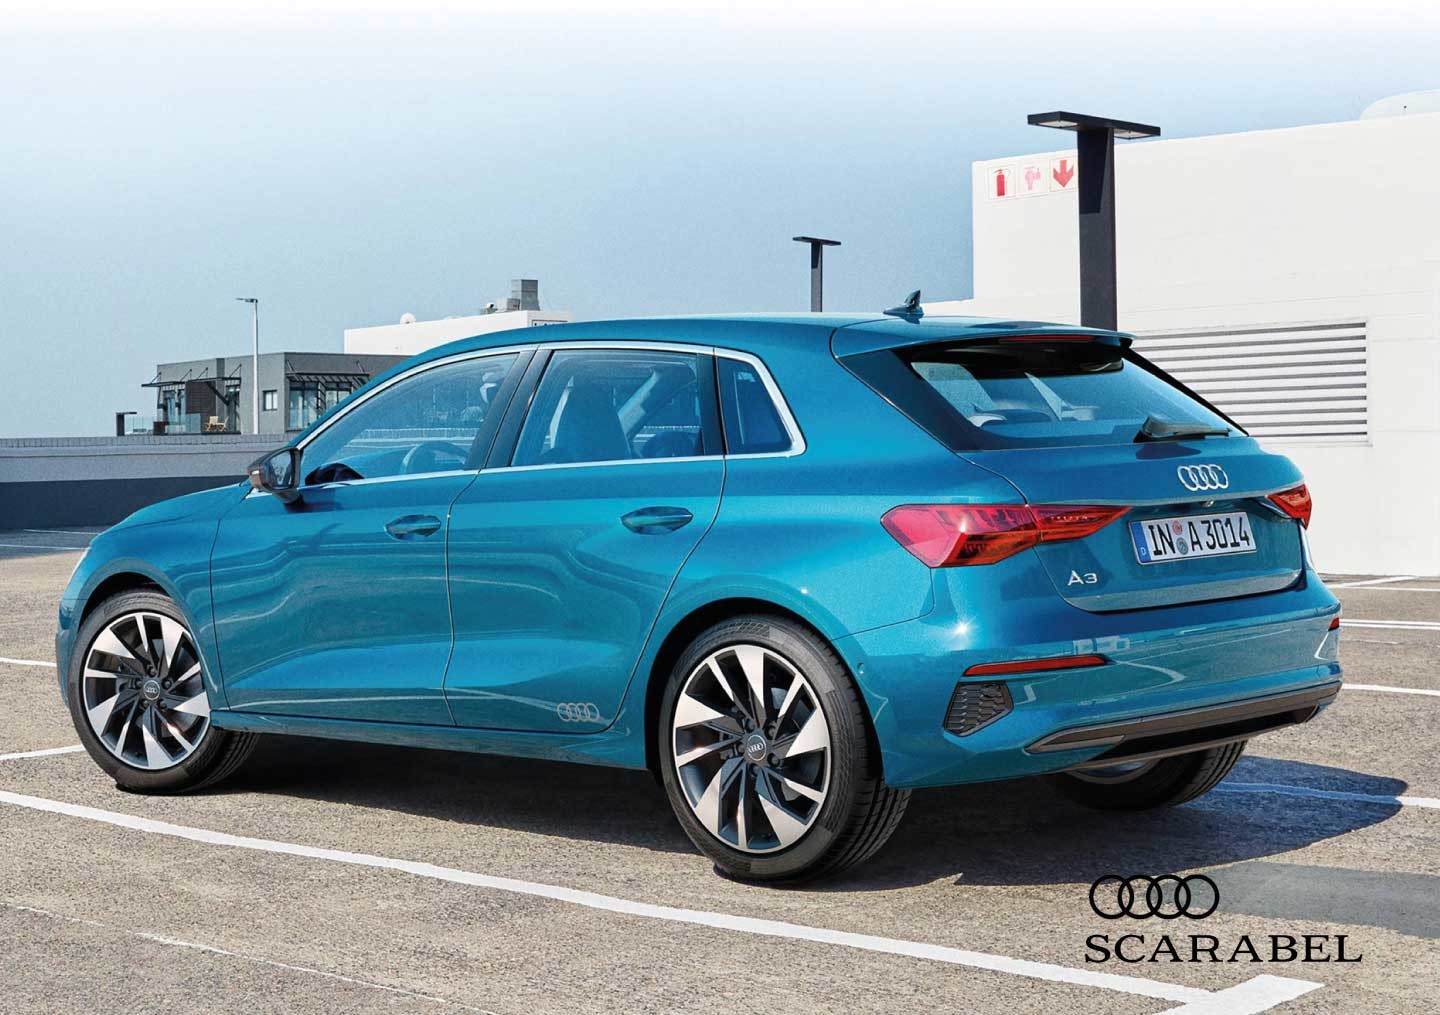 Audi riapre le concessionarie e "sfodera" i suoi nuovi modelli